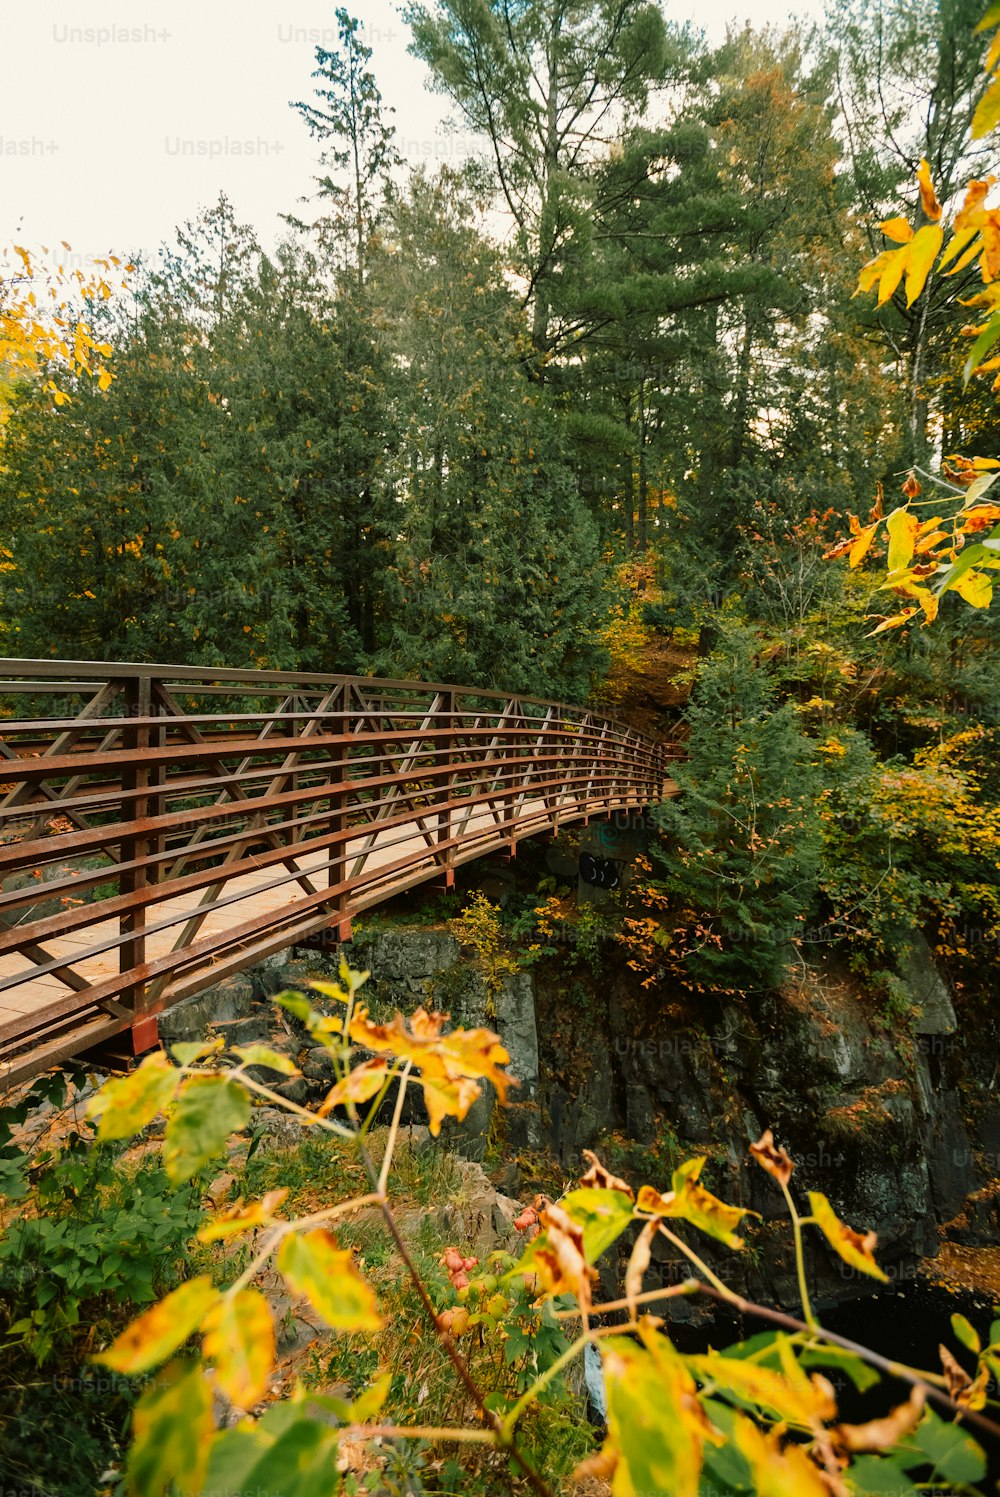 Un ponte di legno su un fiume circondato da alberi